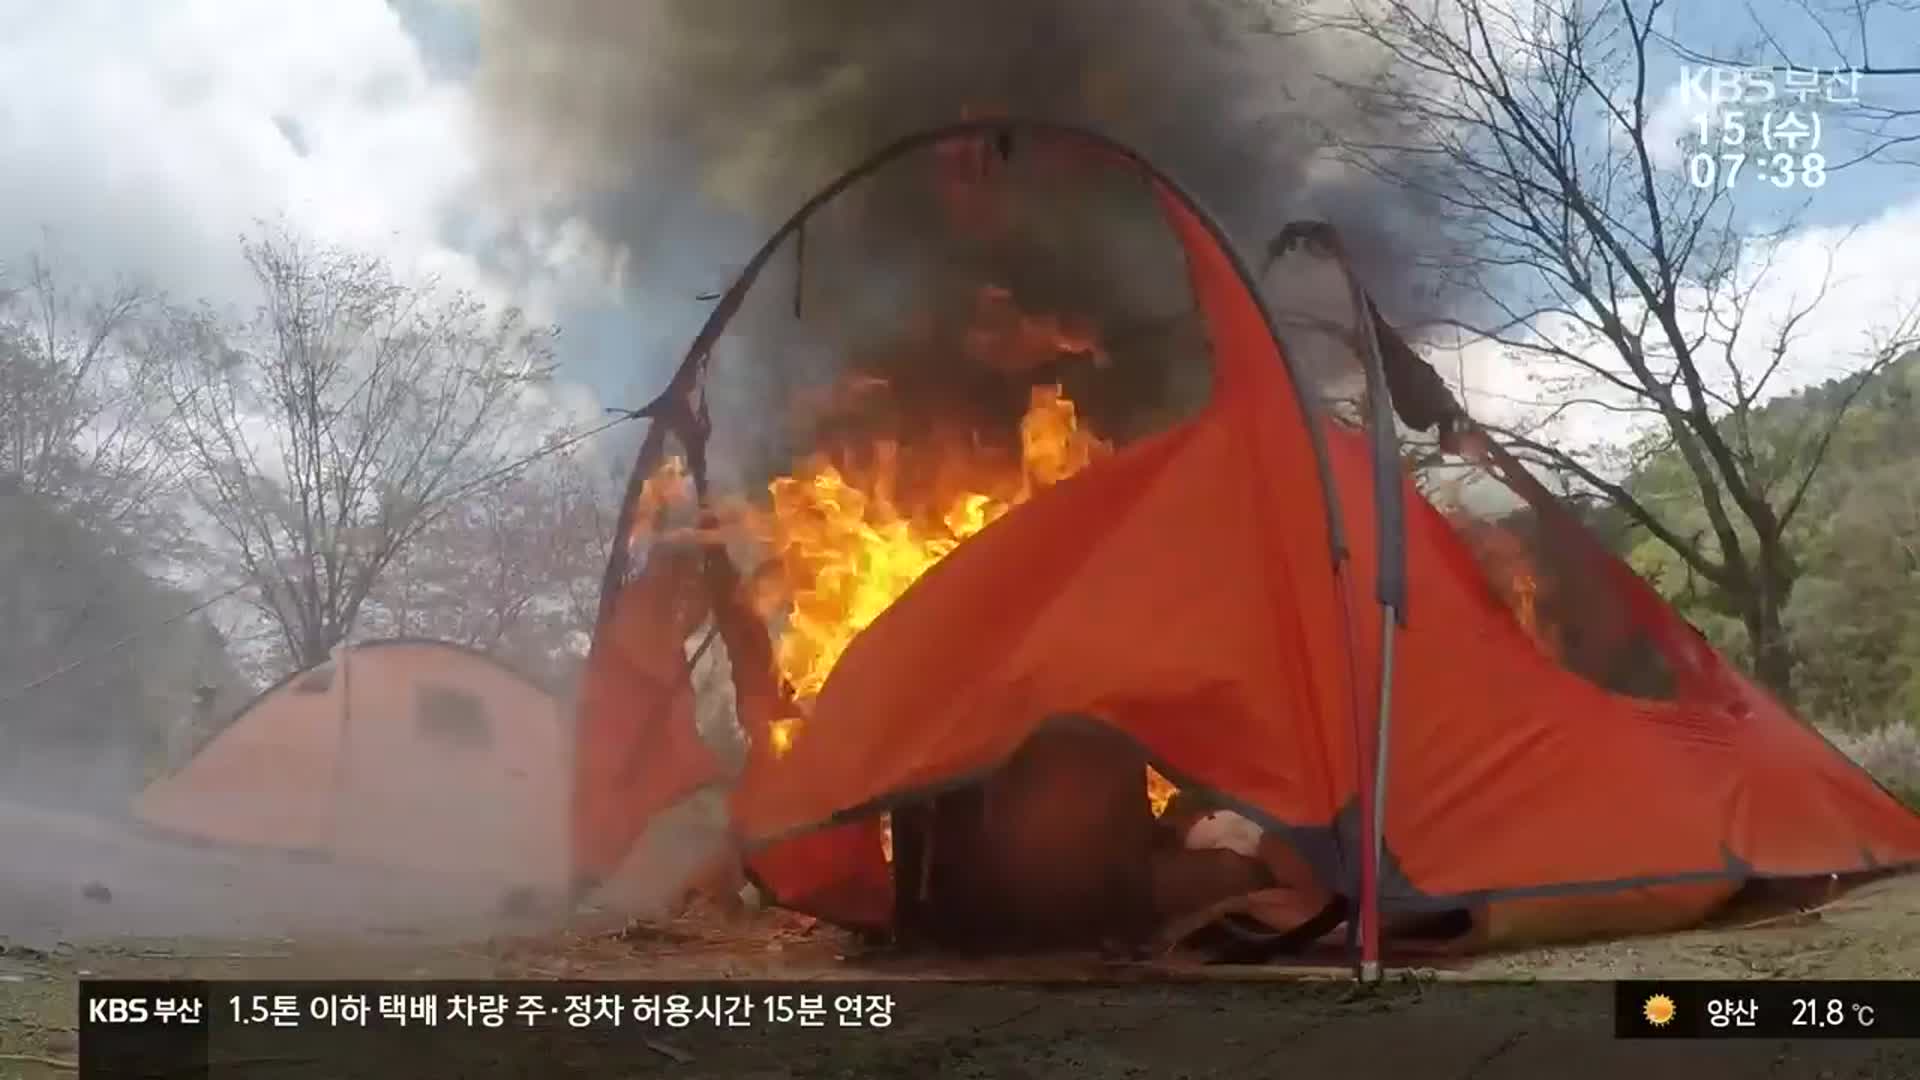 차박 열풍 속 구매한 텐트, 불이 난다면?